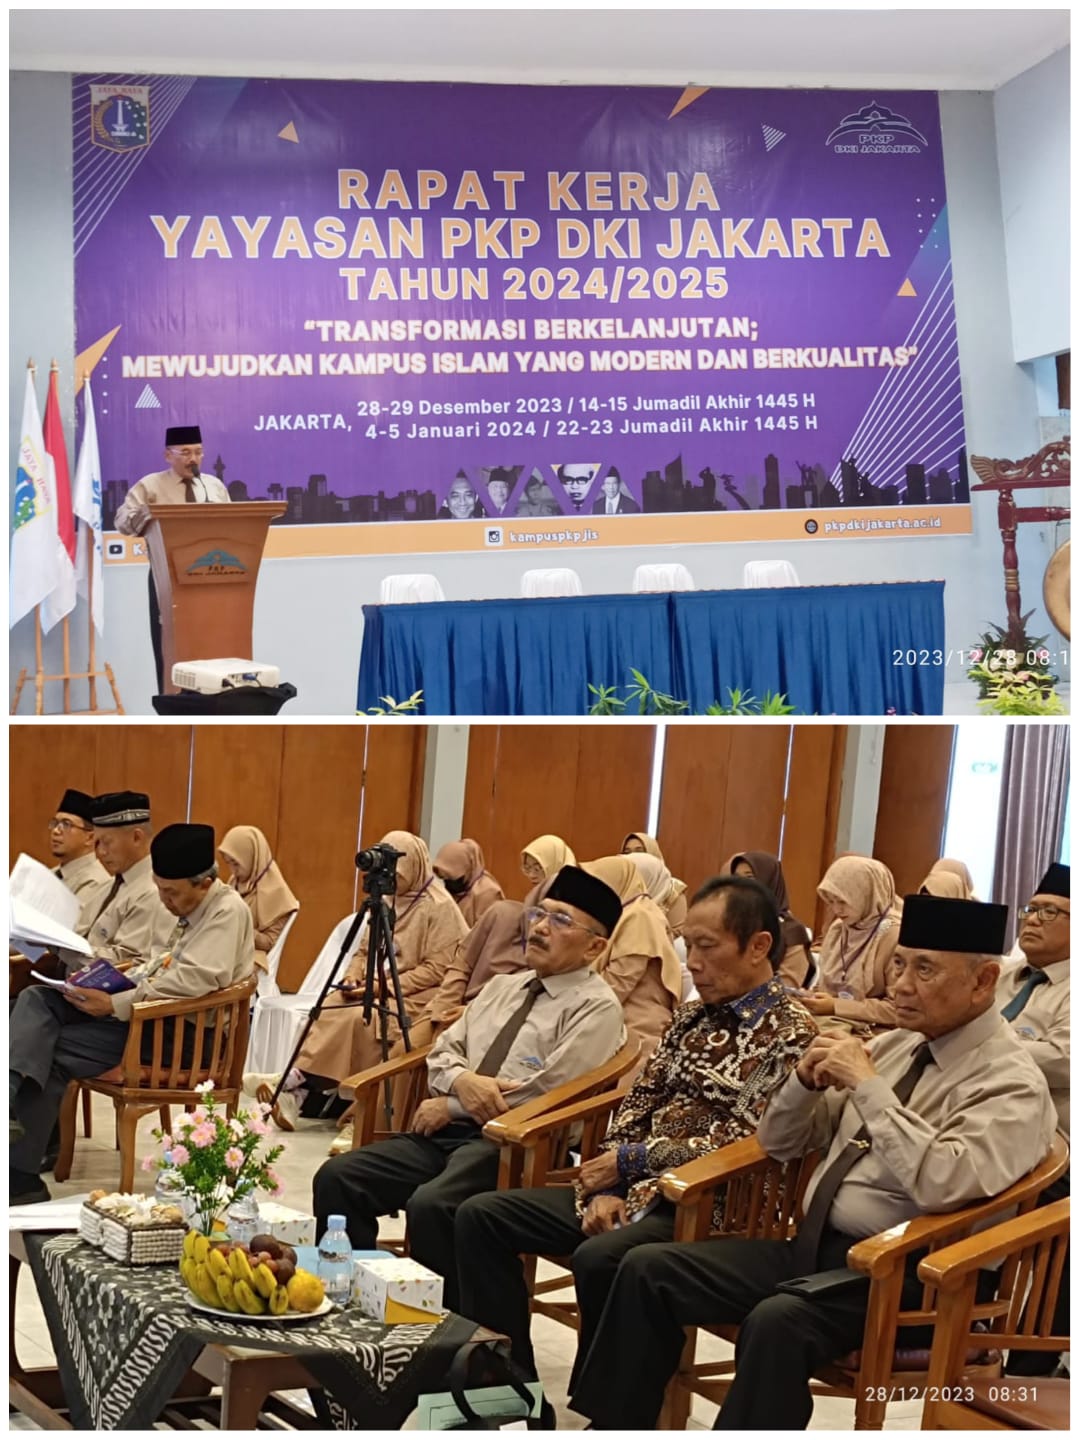 Sambutan Ketua Umum PKP DKI Jakarta pada Acara Pembukaan Rapat Kerja Tahun Pelajaran 2024/2025